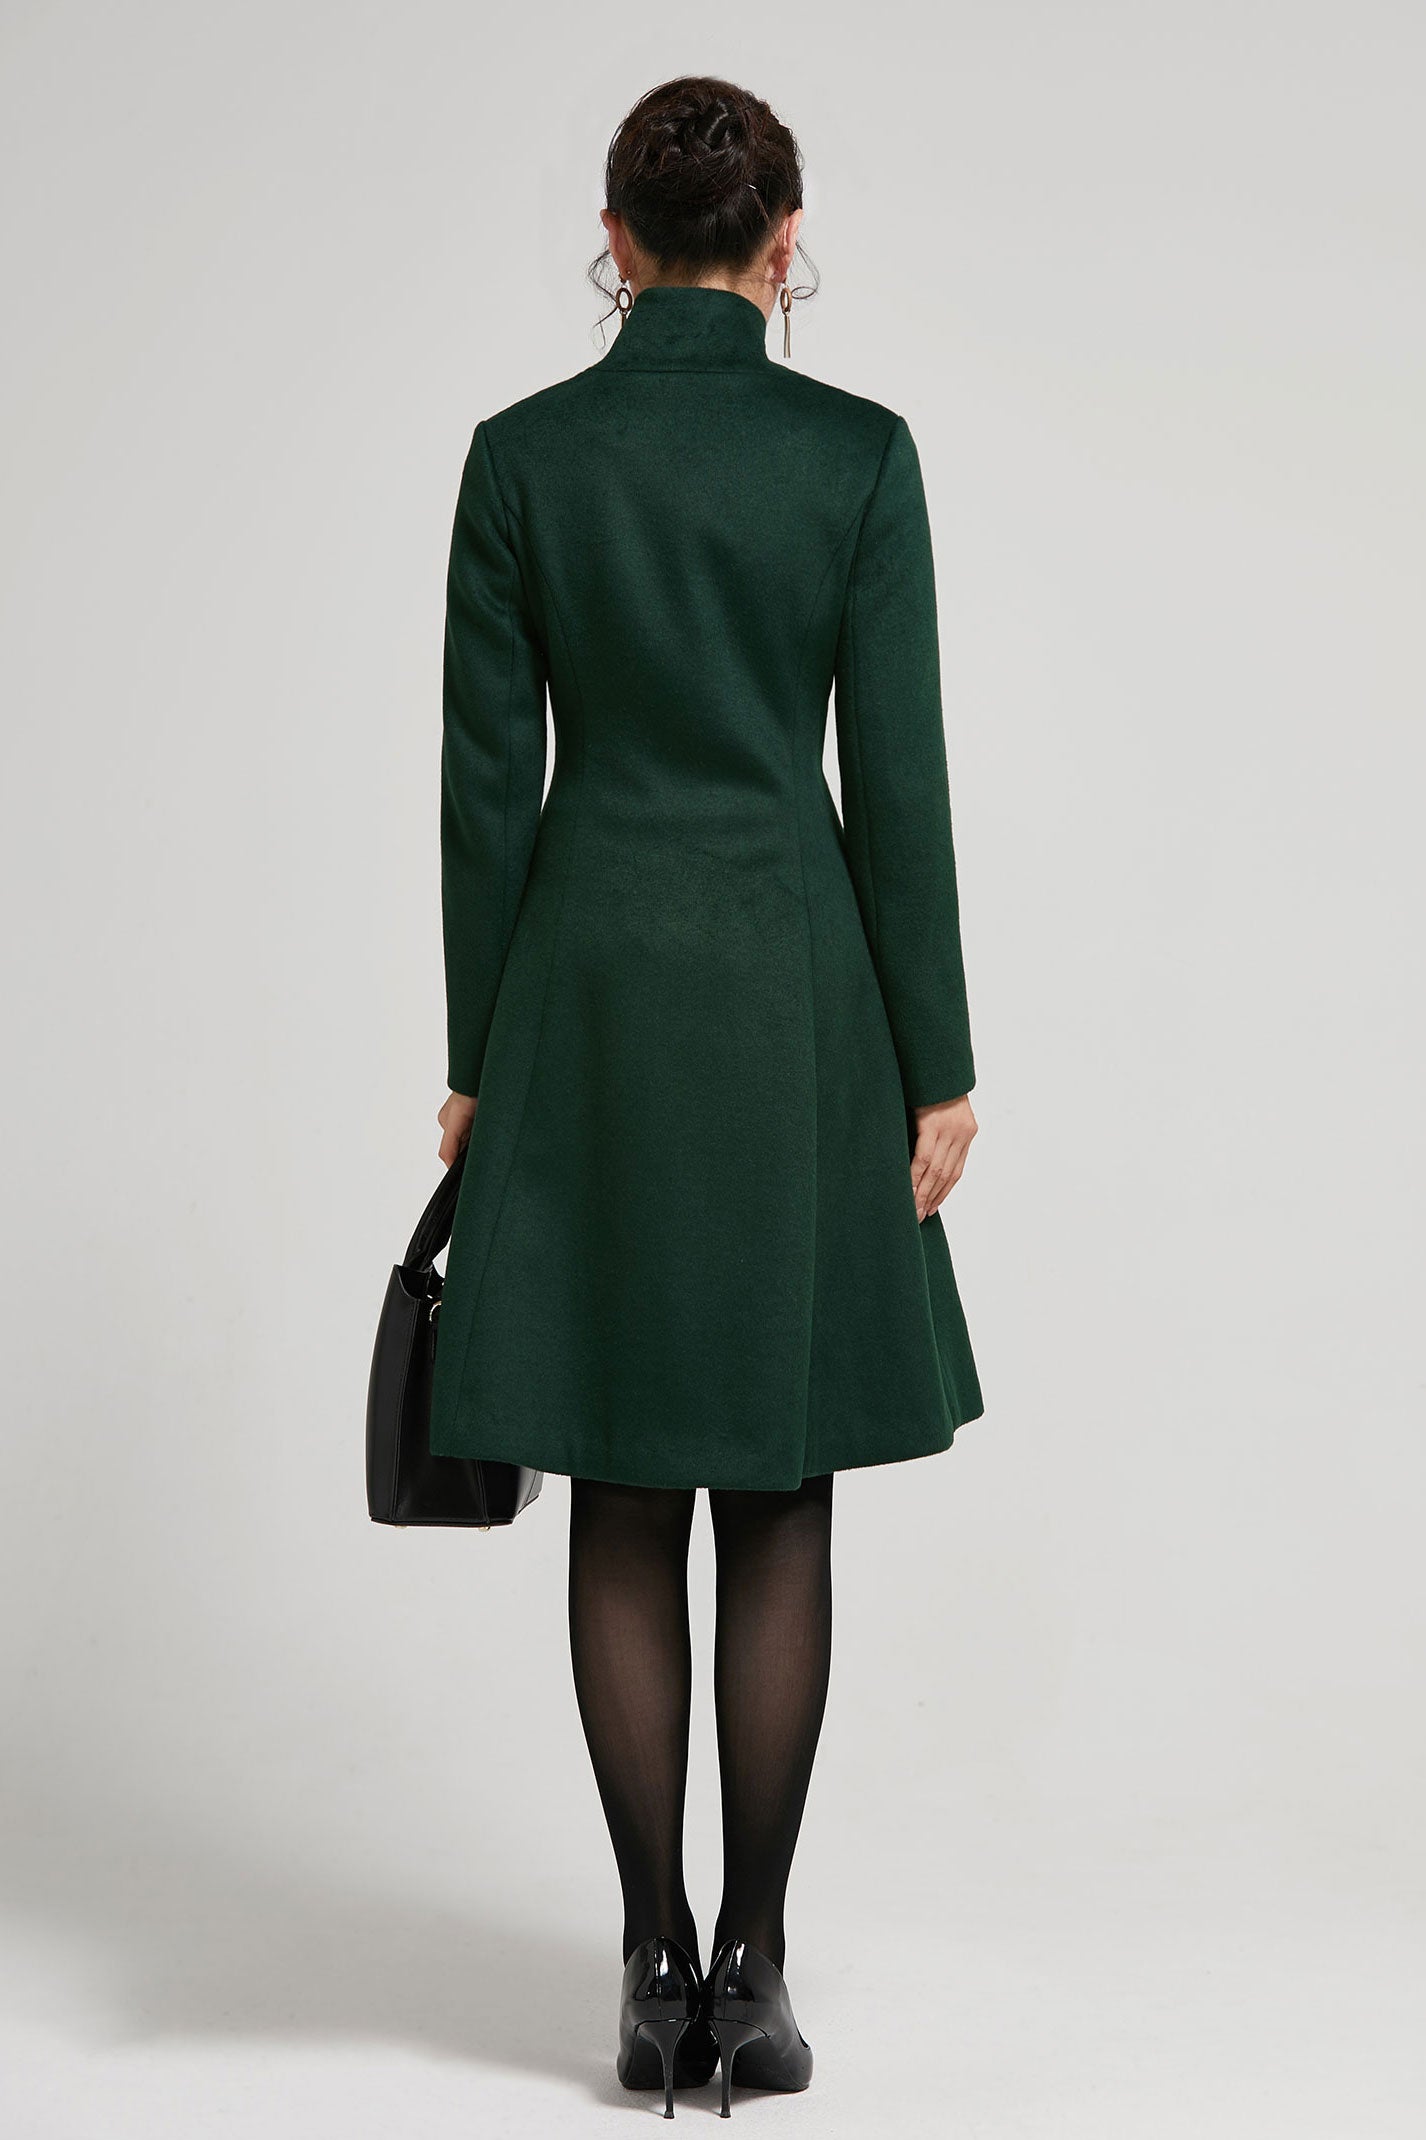 Vintage Inspired Emerald Green Winter coat women 2313